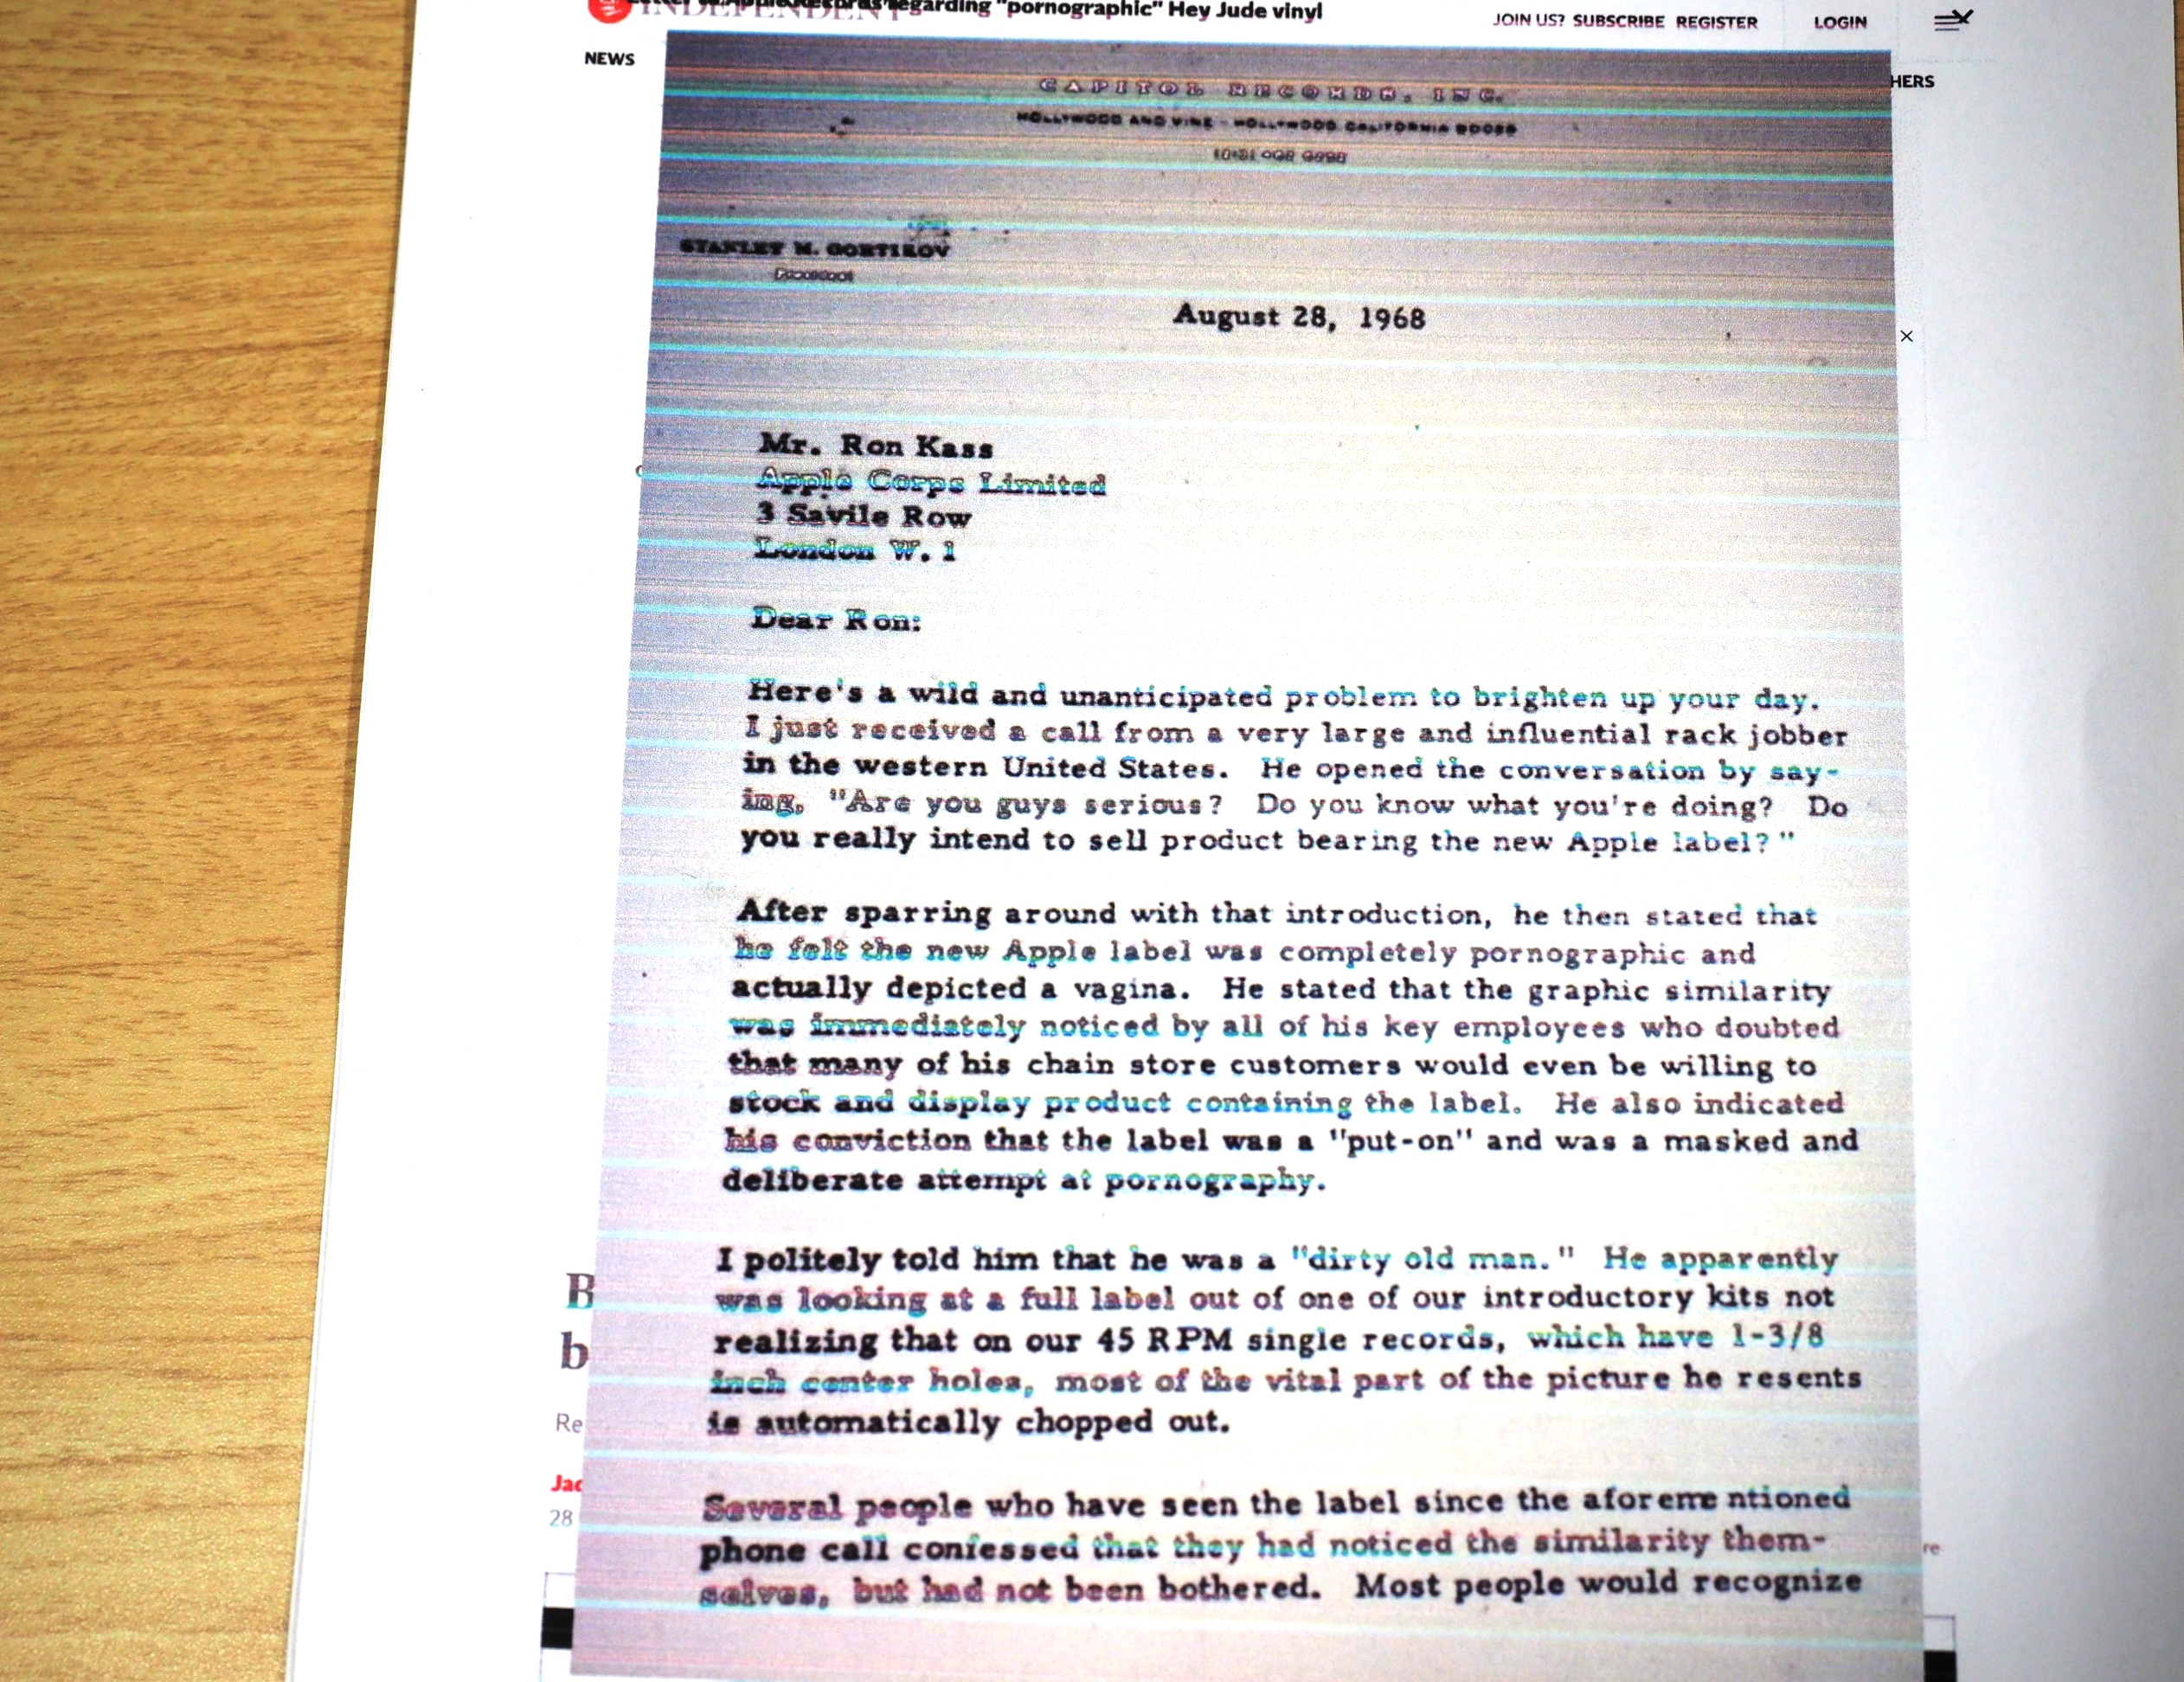 「インディペンデント電子版」2019年1月25日付が報じた、ビートルズの北米販売を司るキャピトル・レコードのスタンリー・ゴルツィコフ代表取締役がアップル・レコードの責任者であるロン・キャスに宛てた手紙。